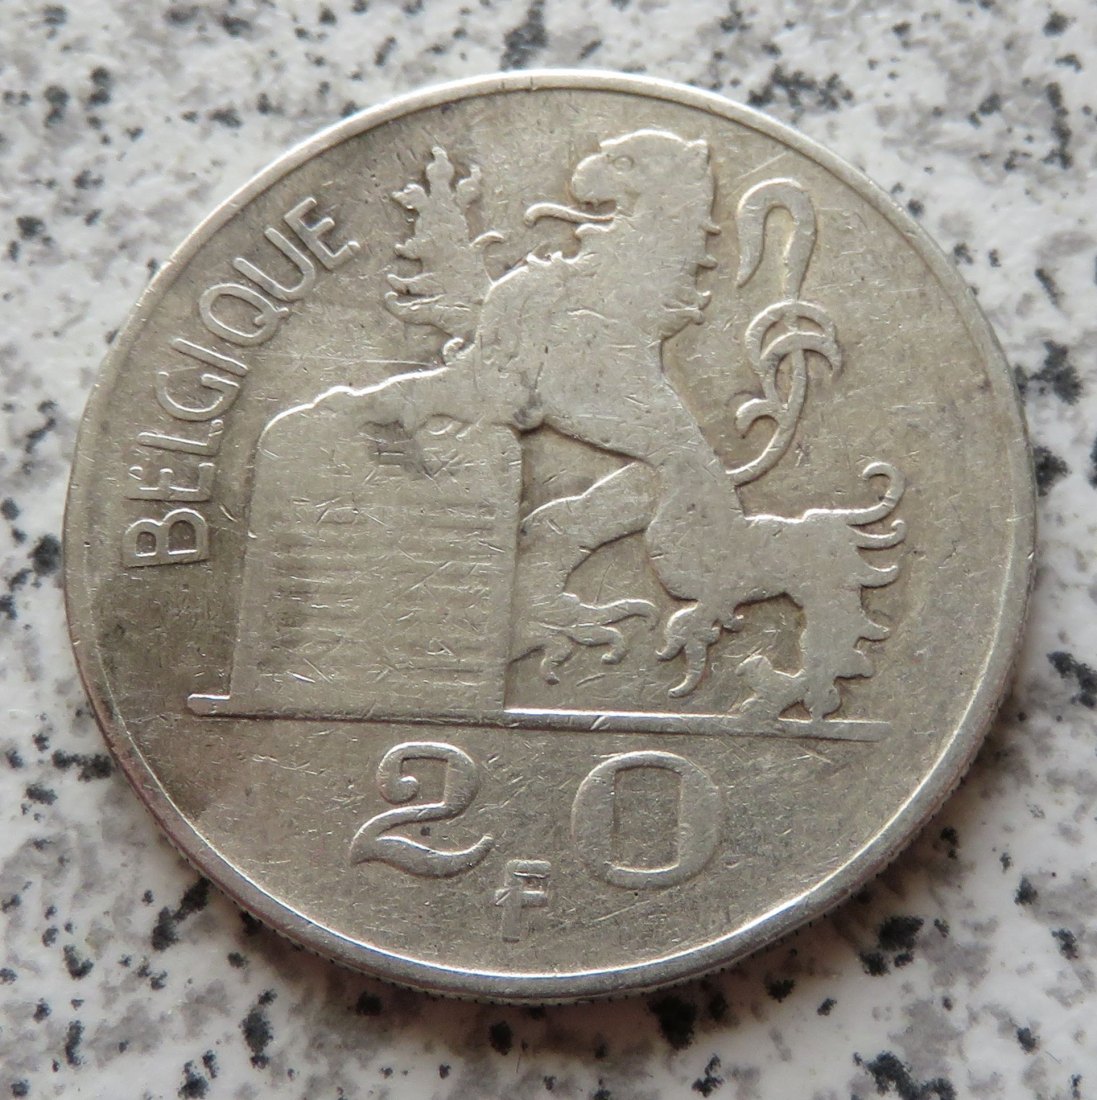  Belgien 20 Francs 1950, französisch   